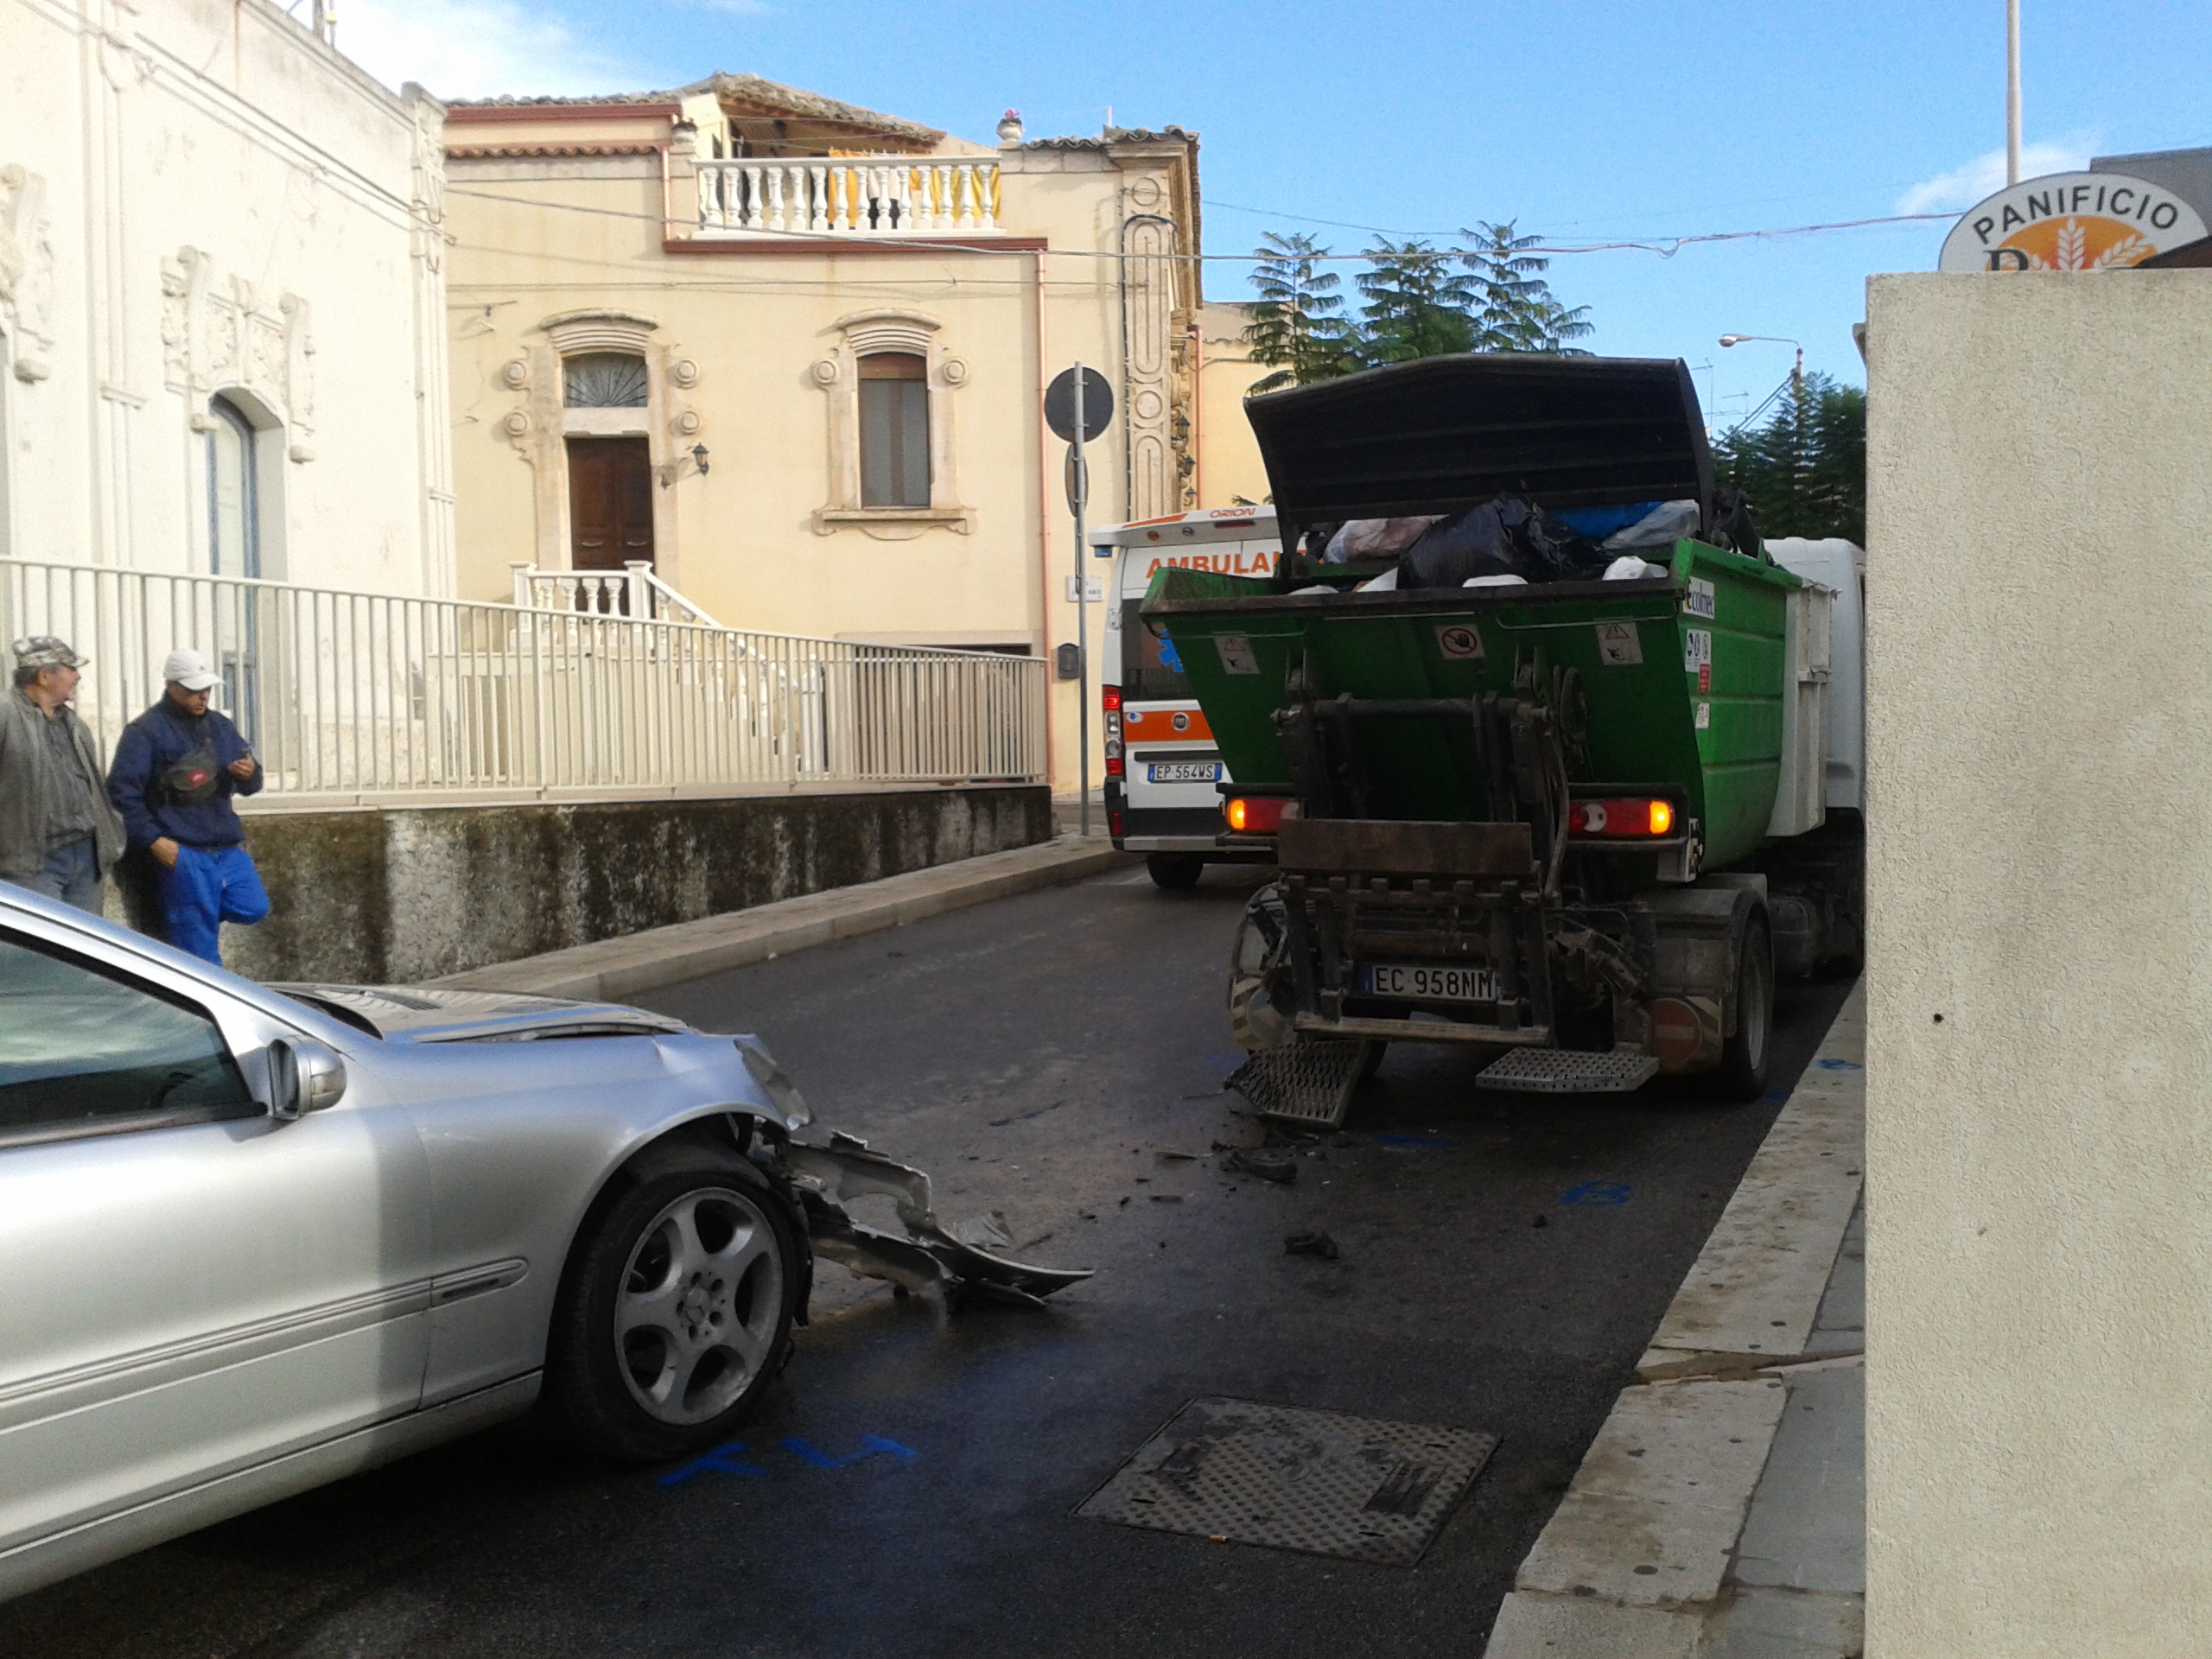  Incidente in via Roma: uomo perde controllo dell’auto e tampona camioncino della nettezza urbana